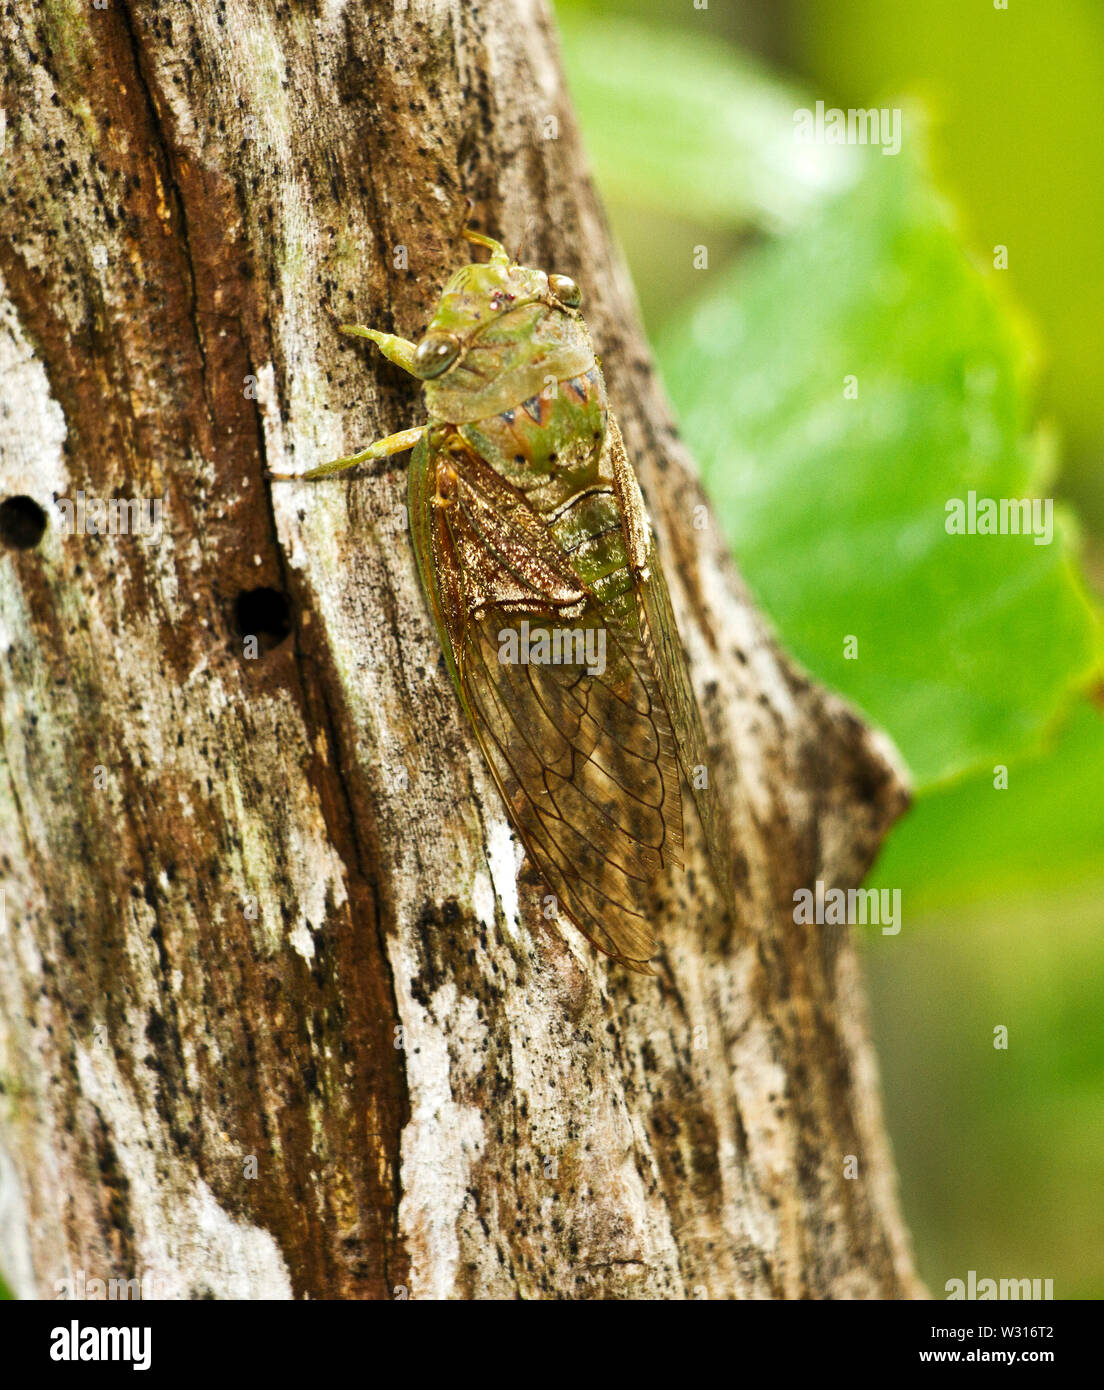 Común a los bosques fluviales tropicales de África Oriental y Meridional, los machos de la Giant Forest Cicada emiten una estridente llamamiento continuo Foto de stock